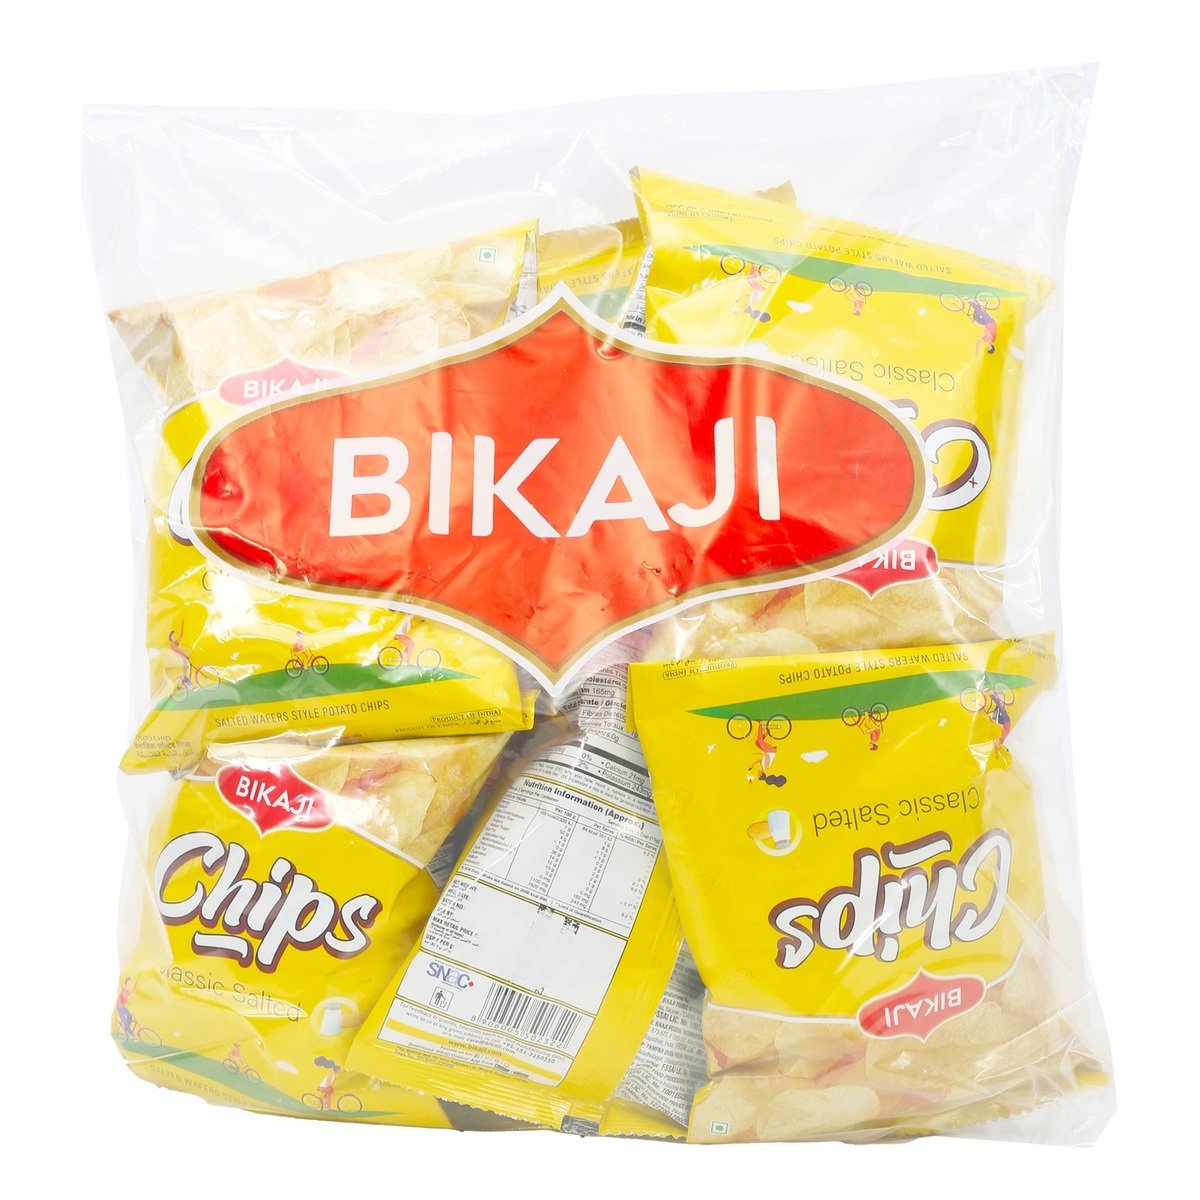 Bikaji Potato Chips Assorted Value Pack 10 x 40 g